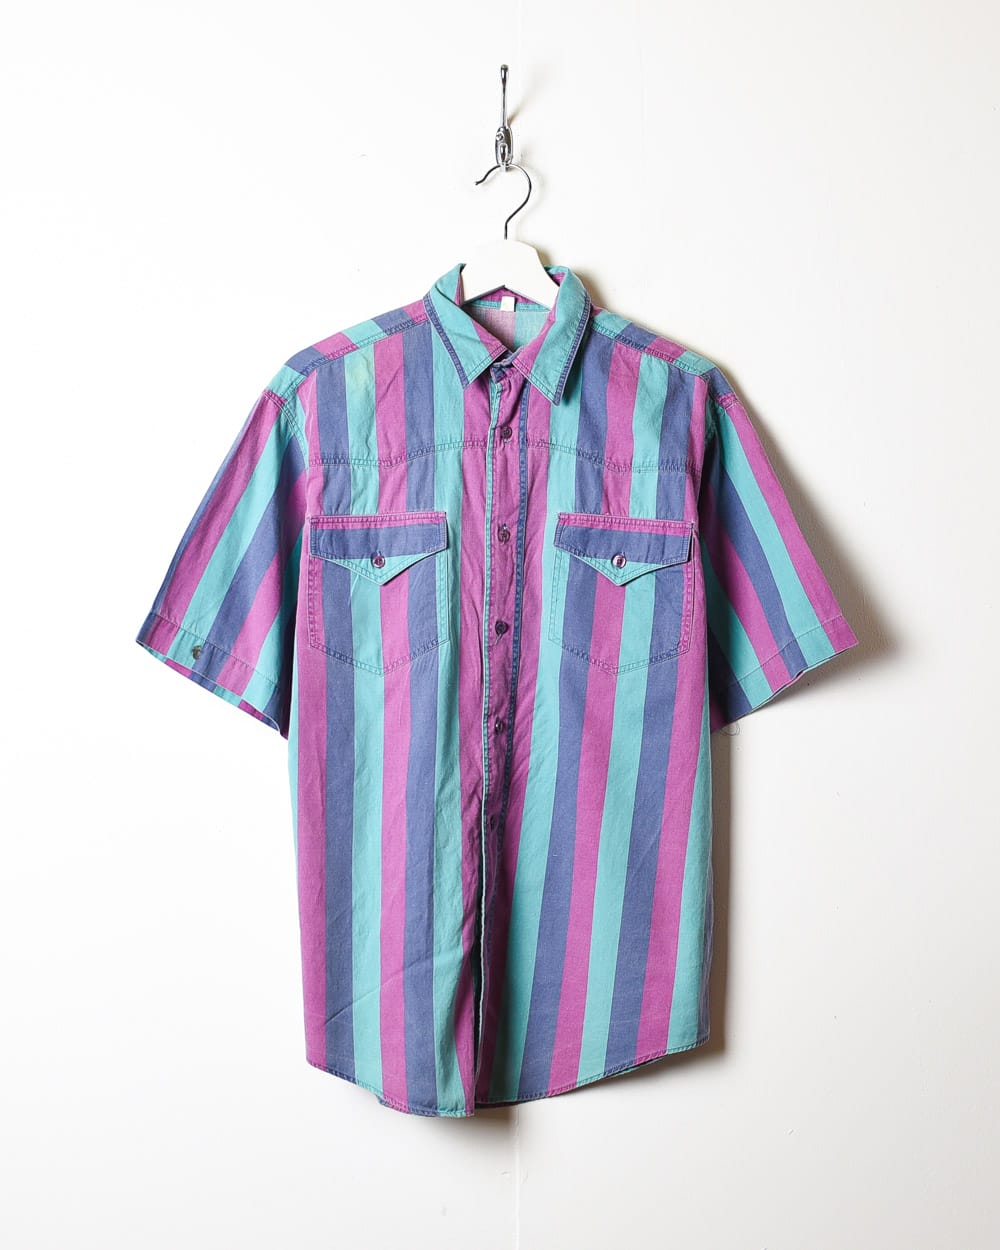 Multicolour Striped Short Sleeved Shirt - Medium